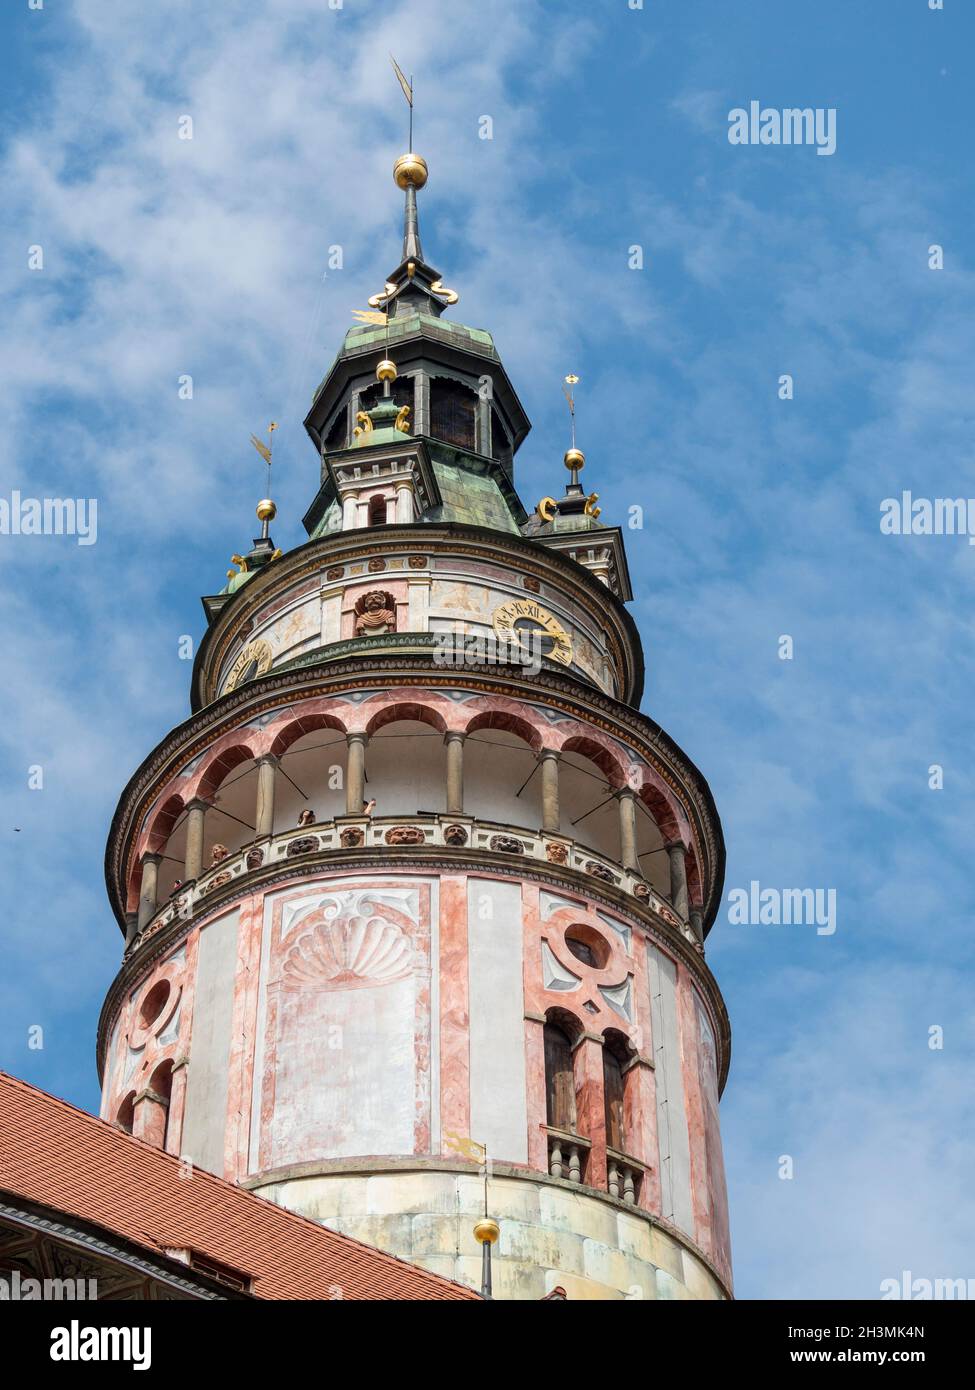 La Torre del Castillo de Český Krumlov vuelve a un cielo azul: Esta torre alta del renacimiento domina el horizonte de la pequeña ciudad de Český Krumlov. Pinturas al fresco decoran su fachada. Foto de stock